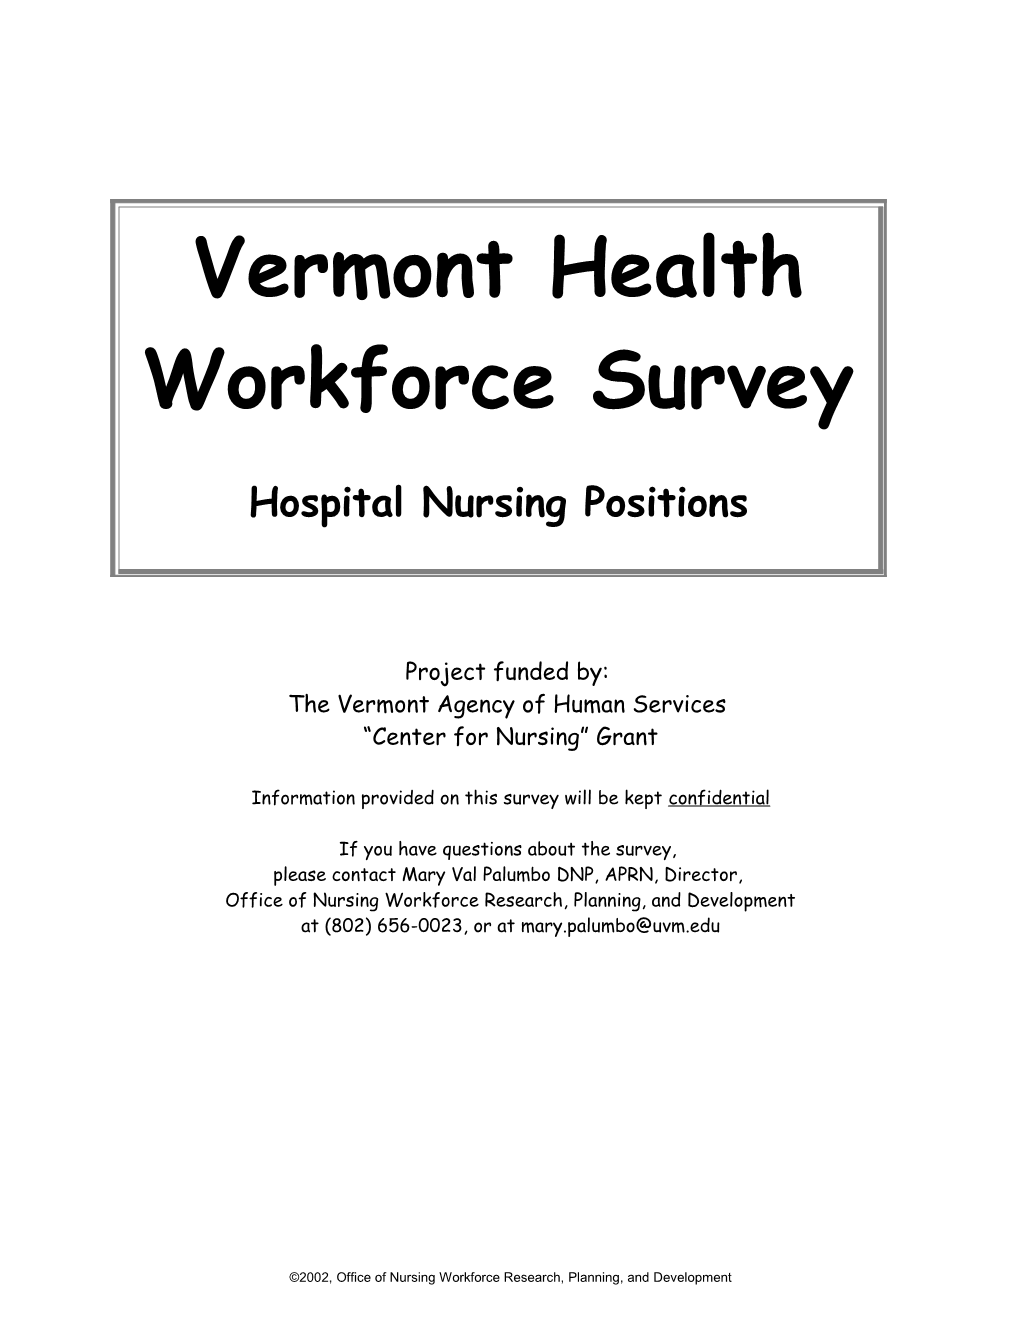 Health Workforce Survey